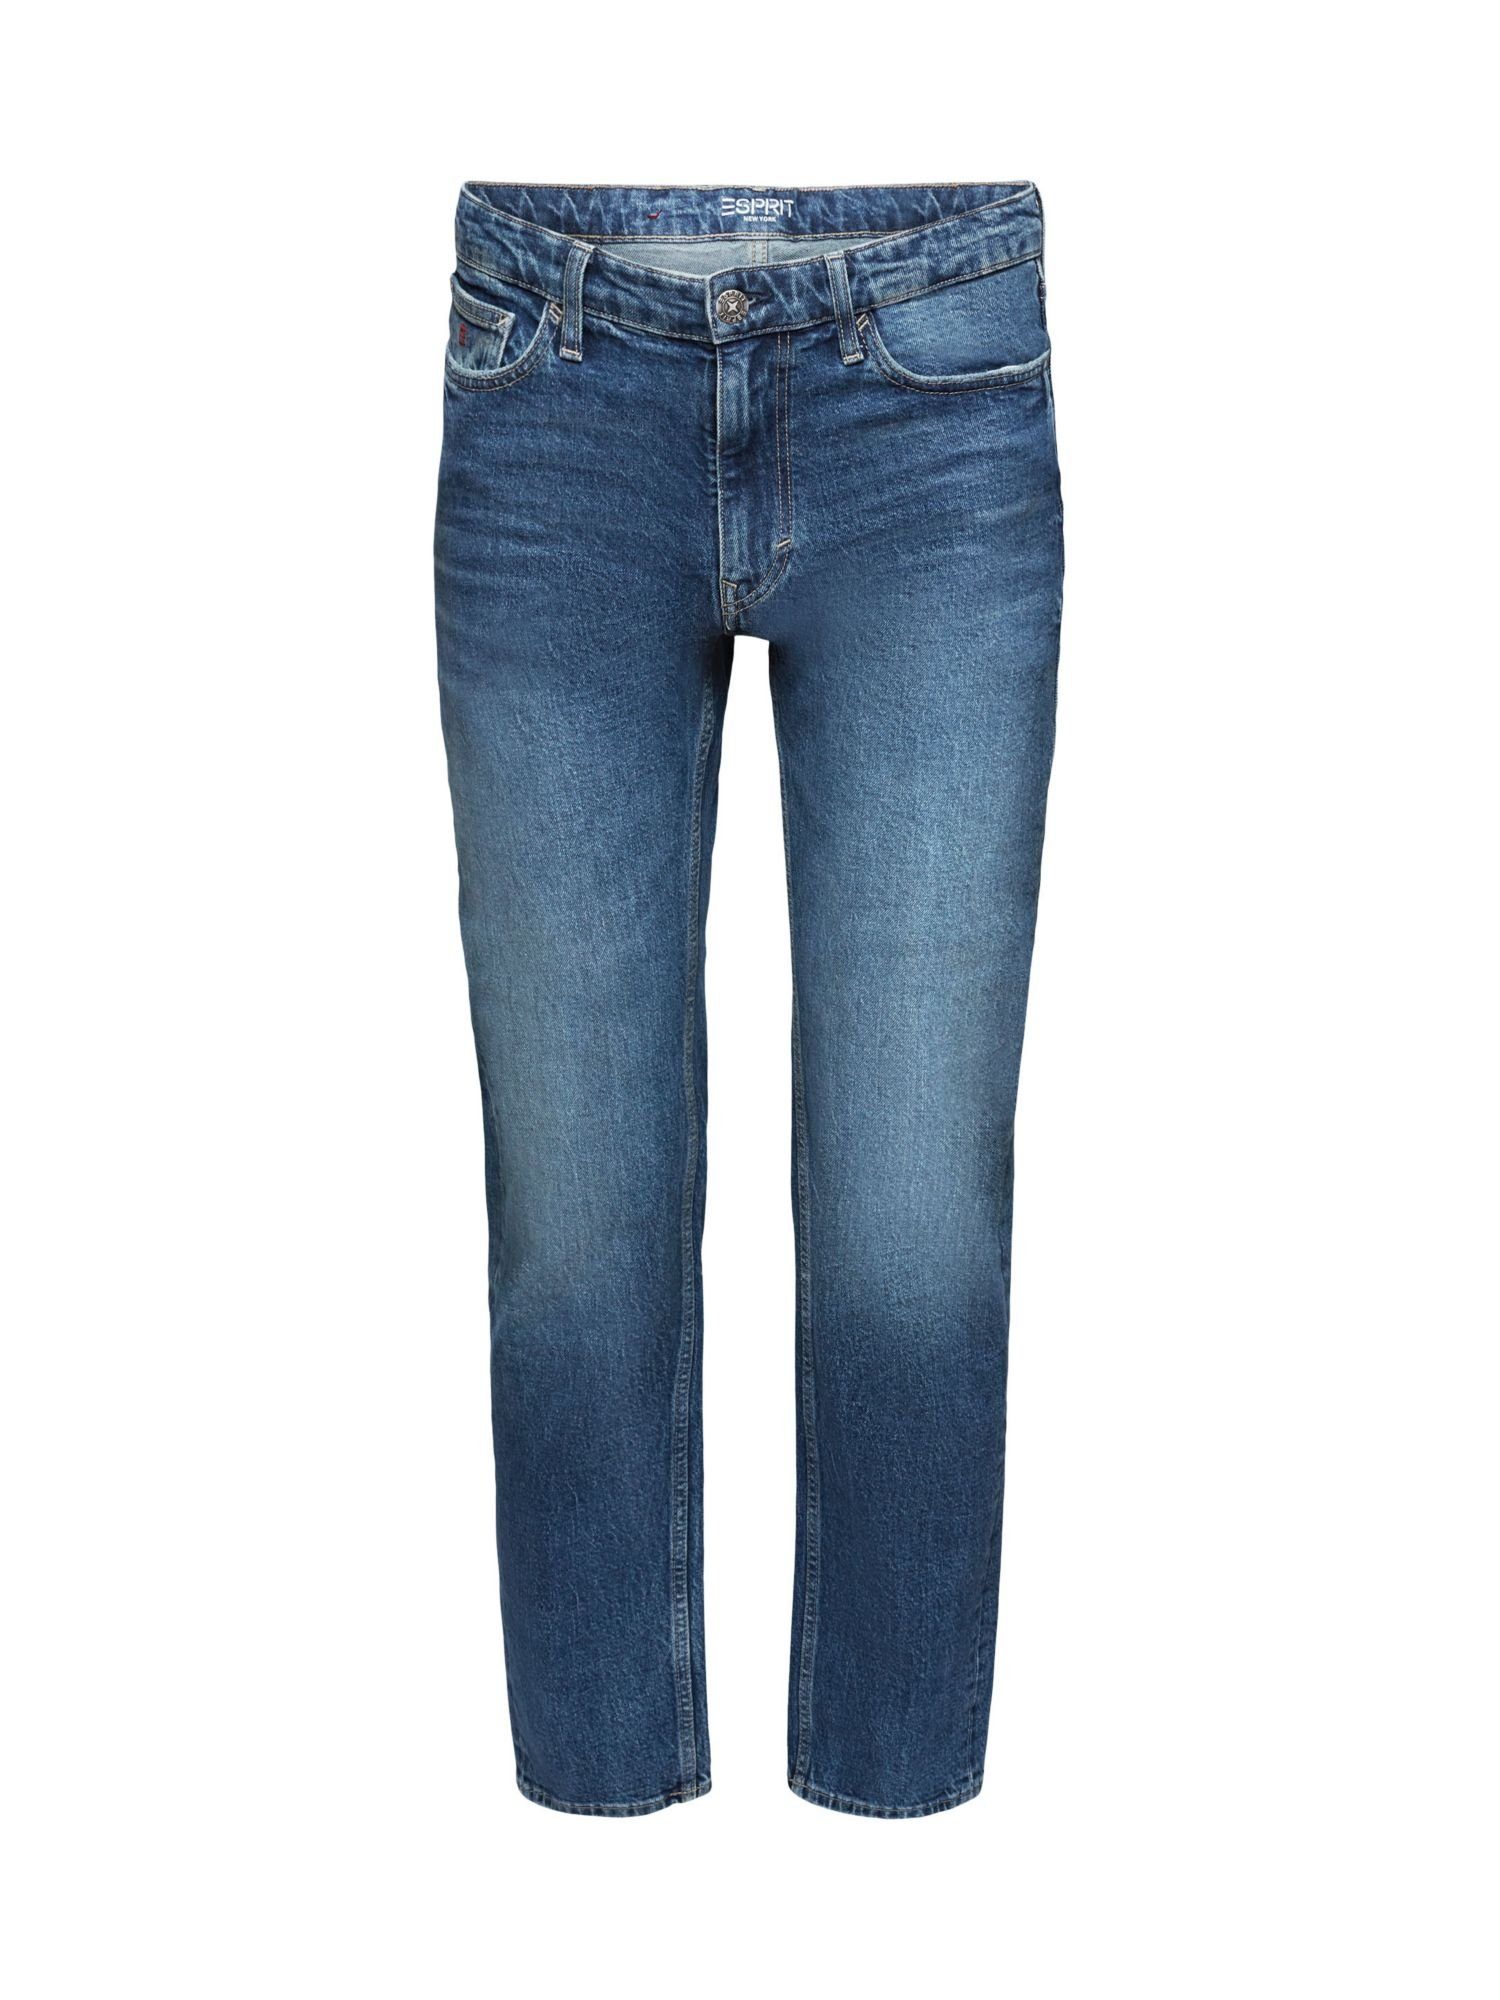 Esprit Straight-Jeans Gerade Jeans mit mittelhohem Bund | Straight-Fit Jeans